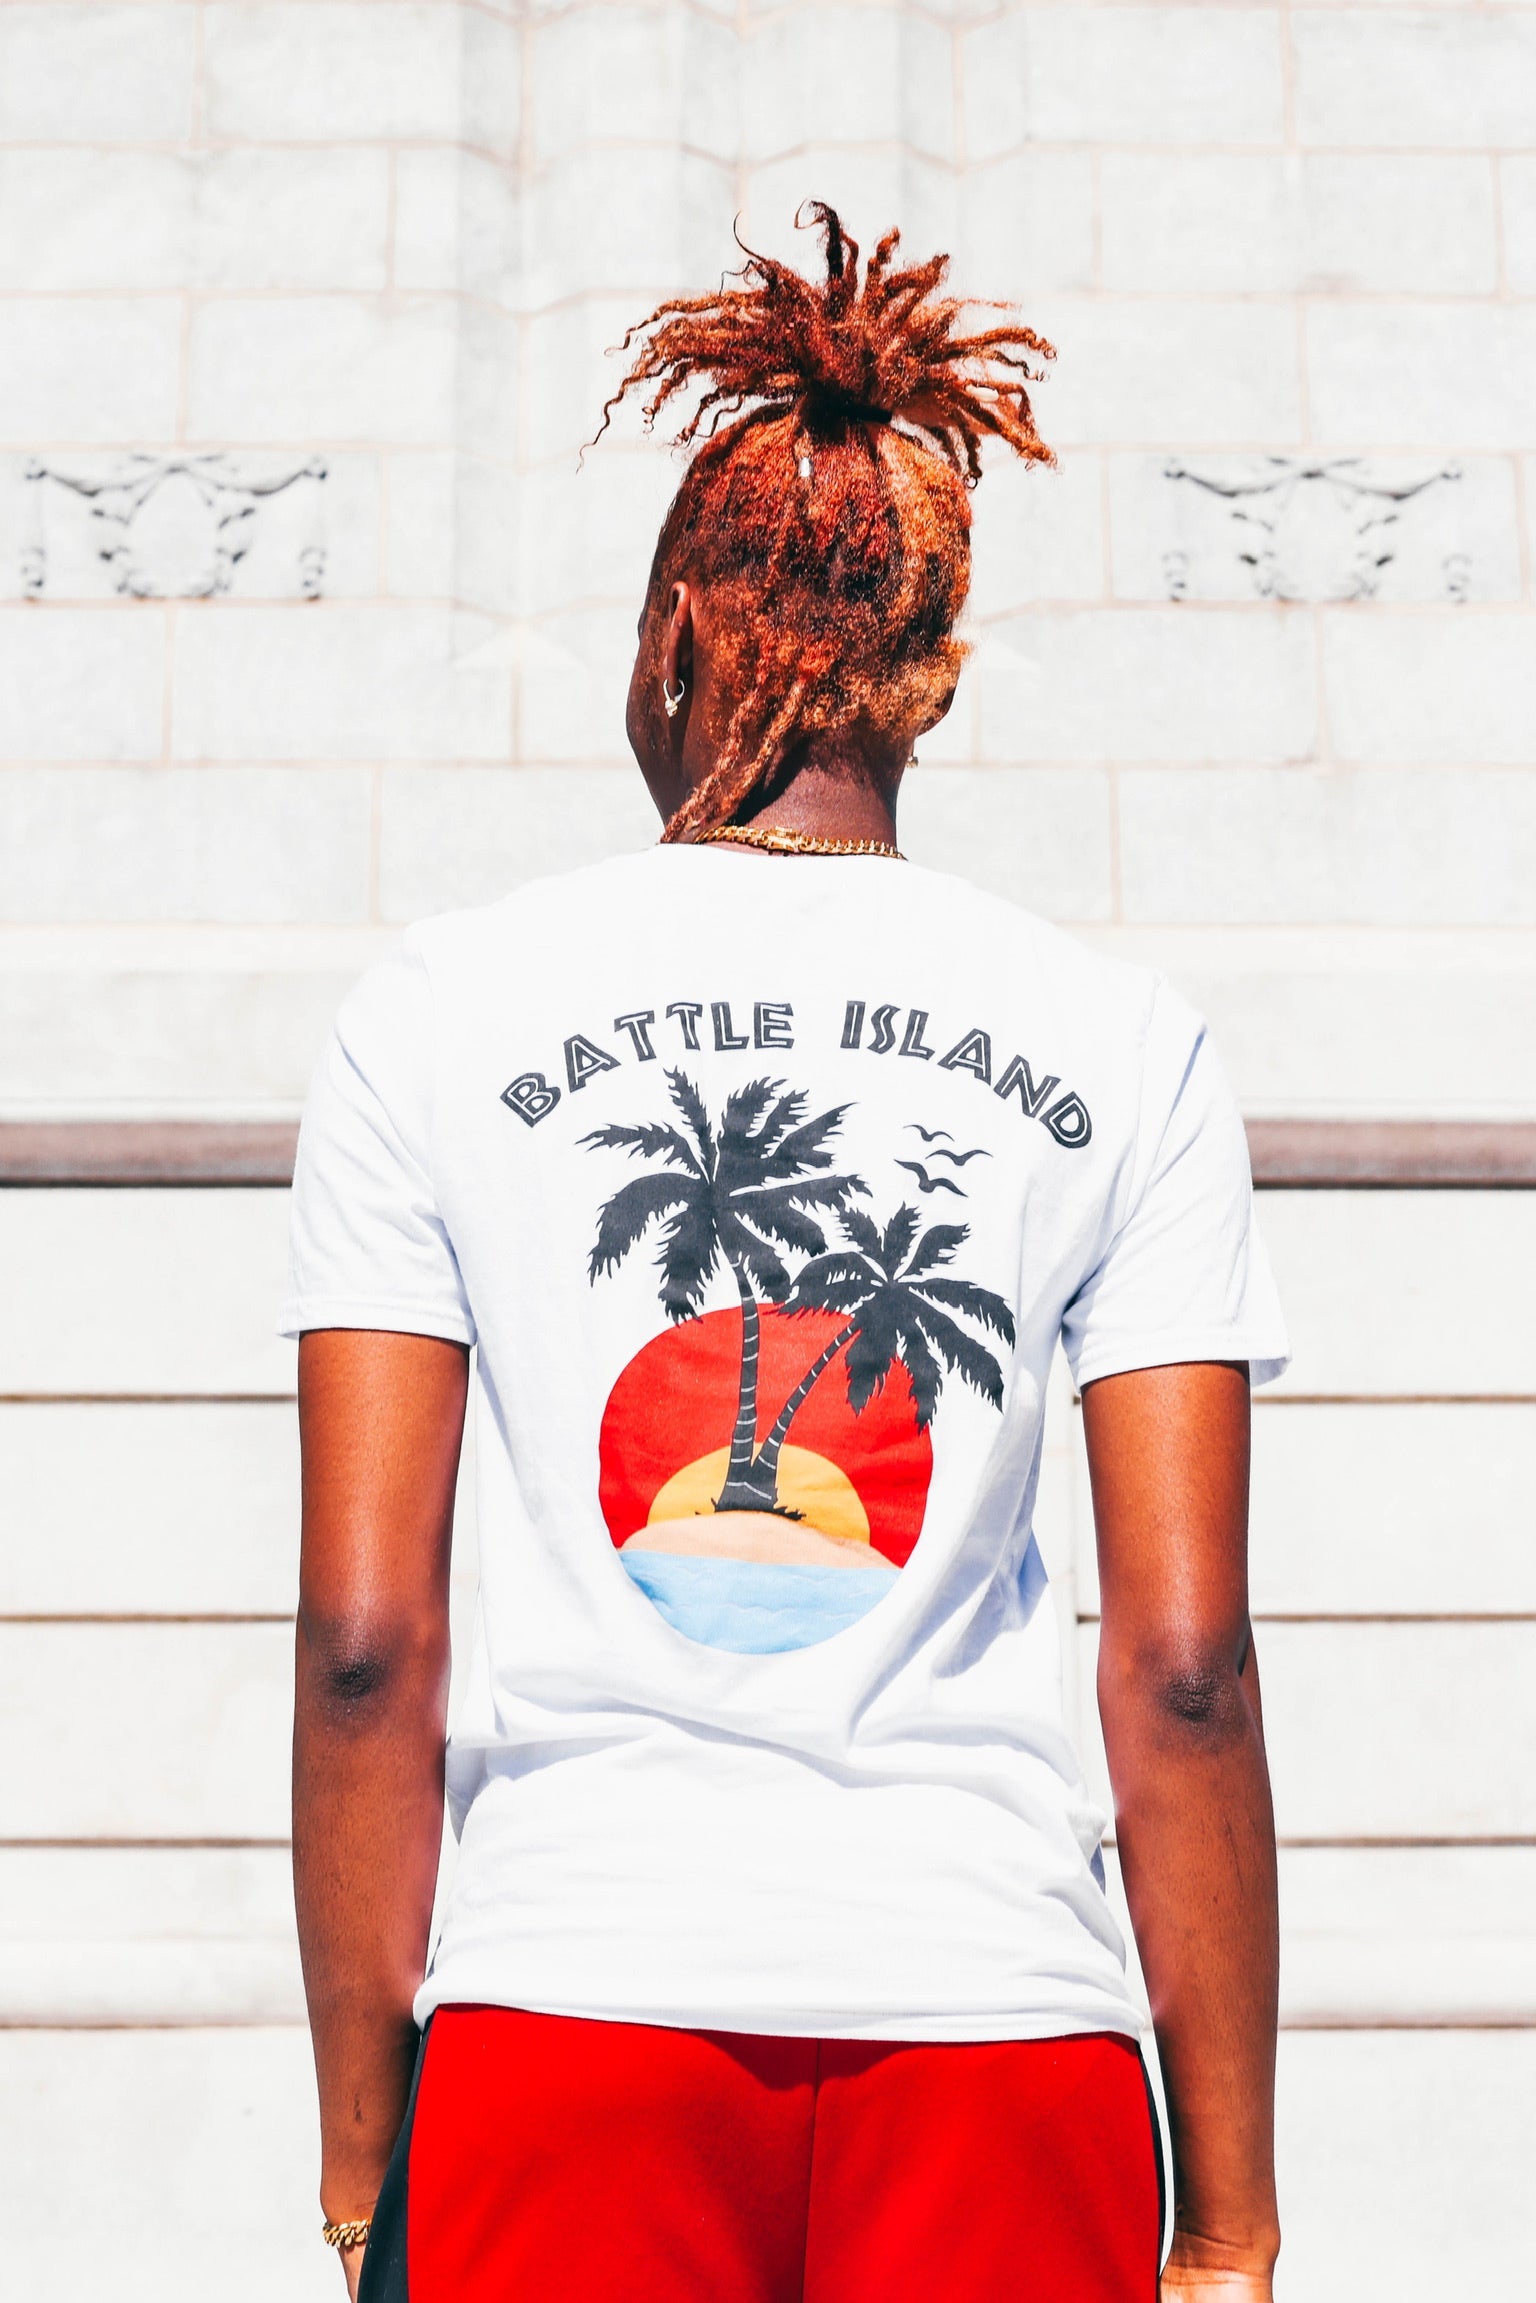 Battle Island T-Shirt